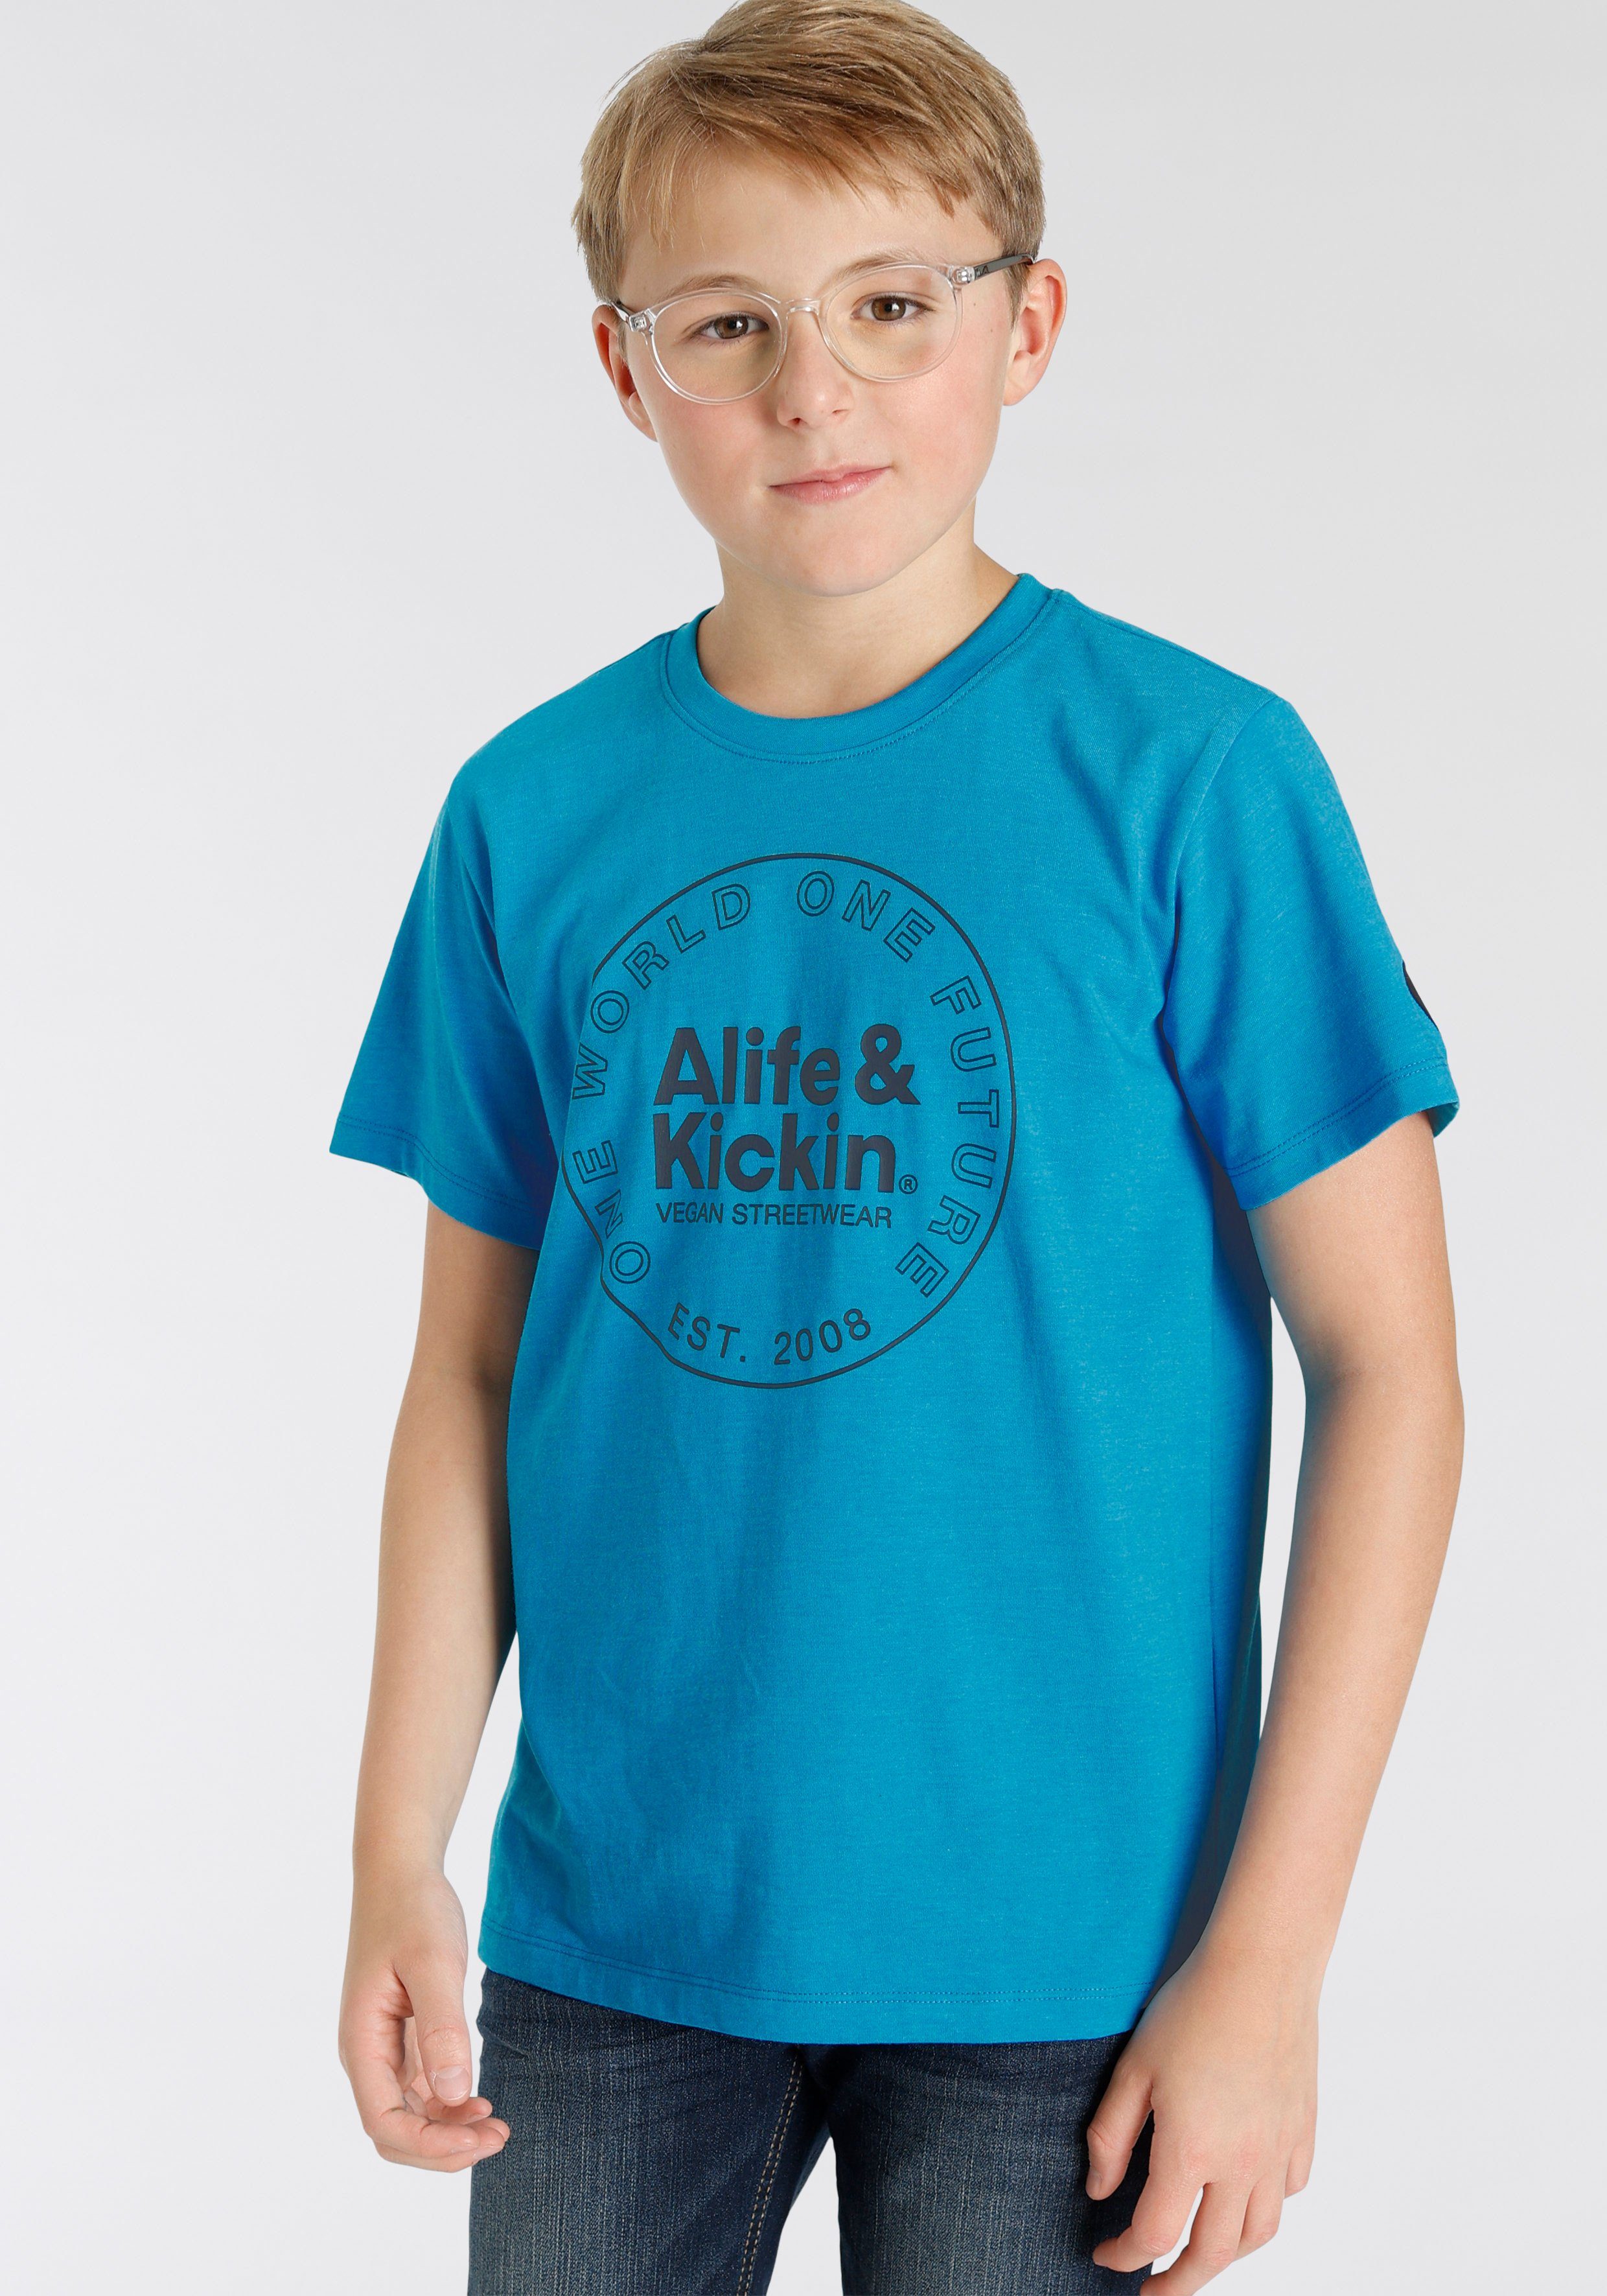 Kickin & Logo-Print Alife&Kickin NEUE für Kids Qualität, MARKE! T-Shirt Alife melierter in